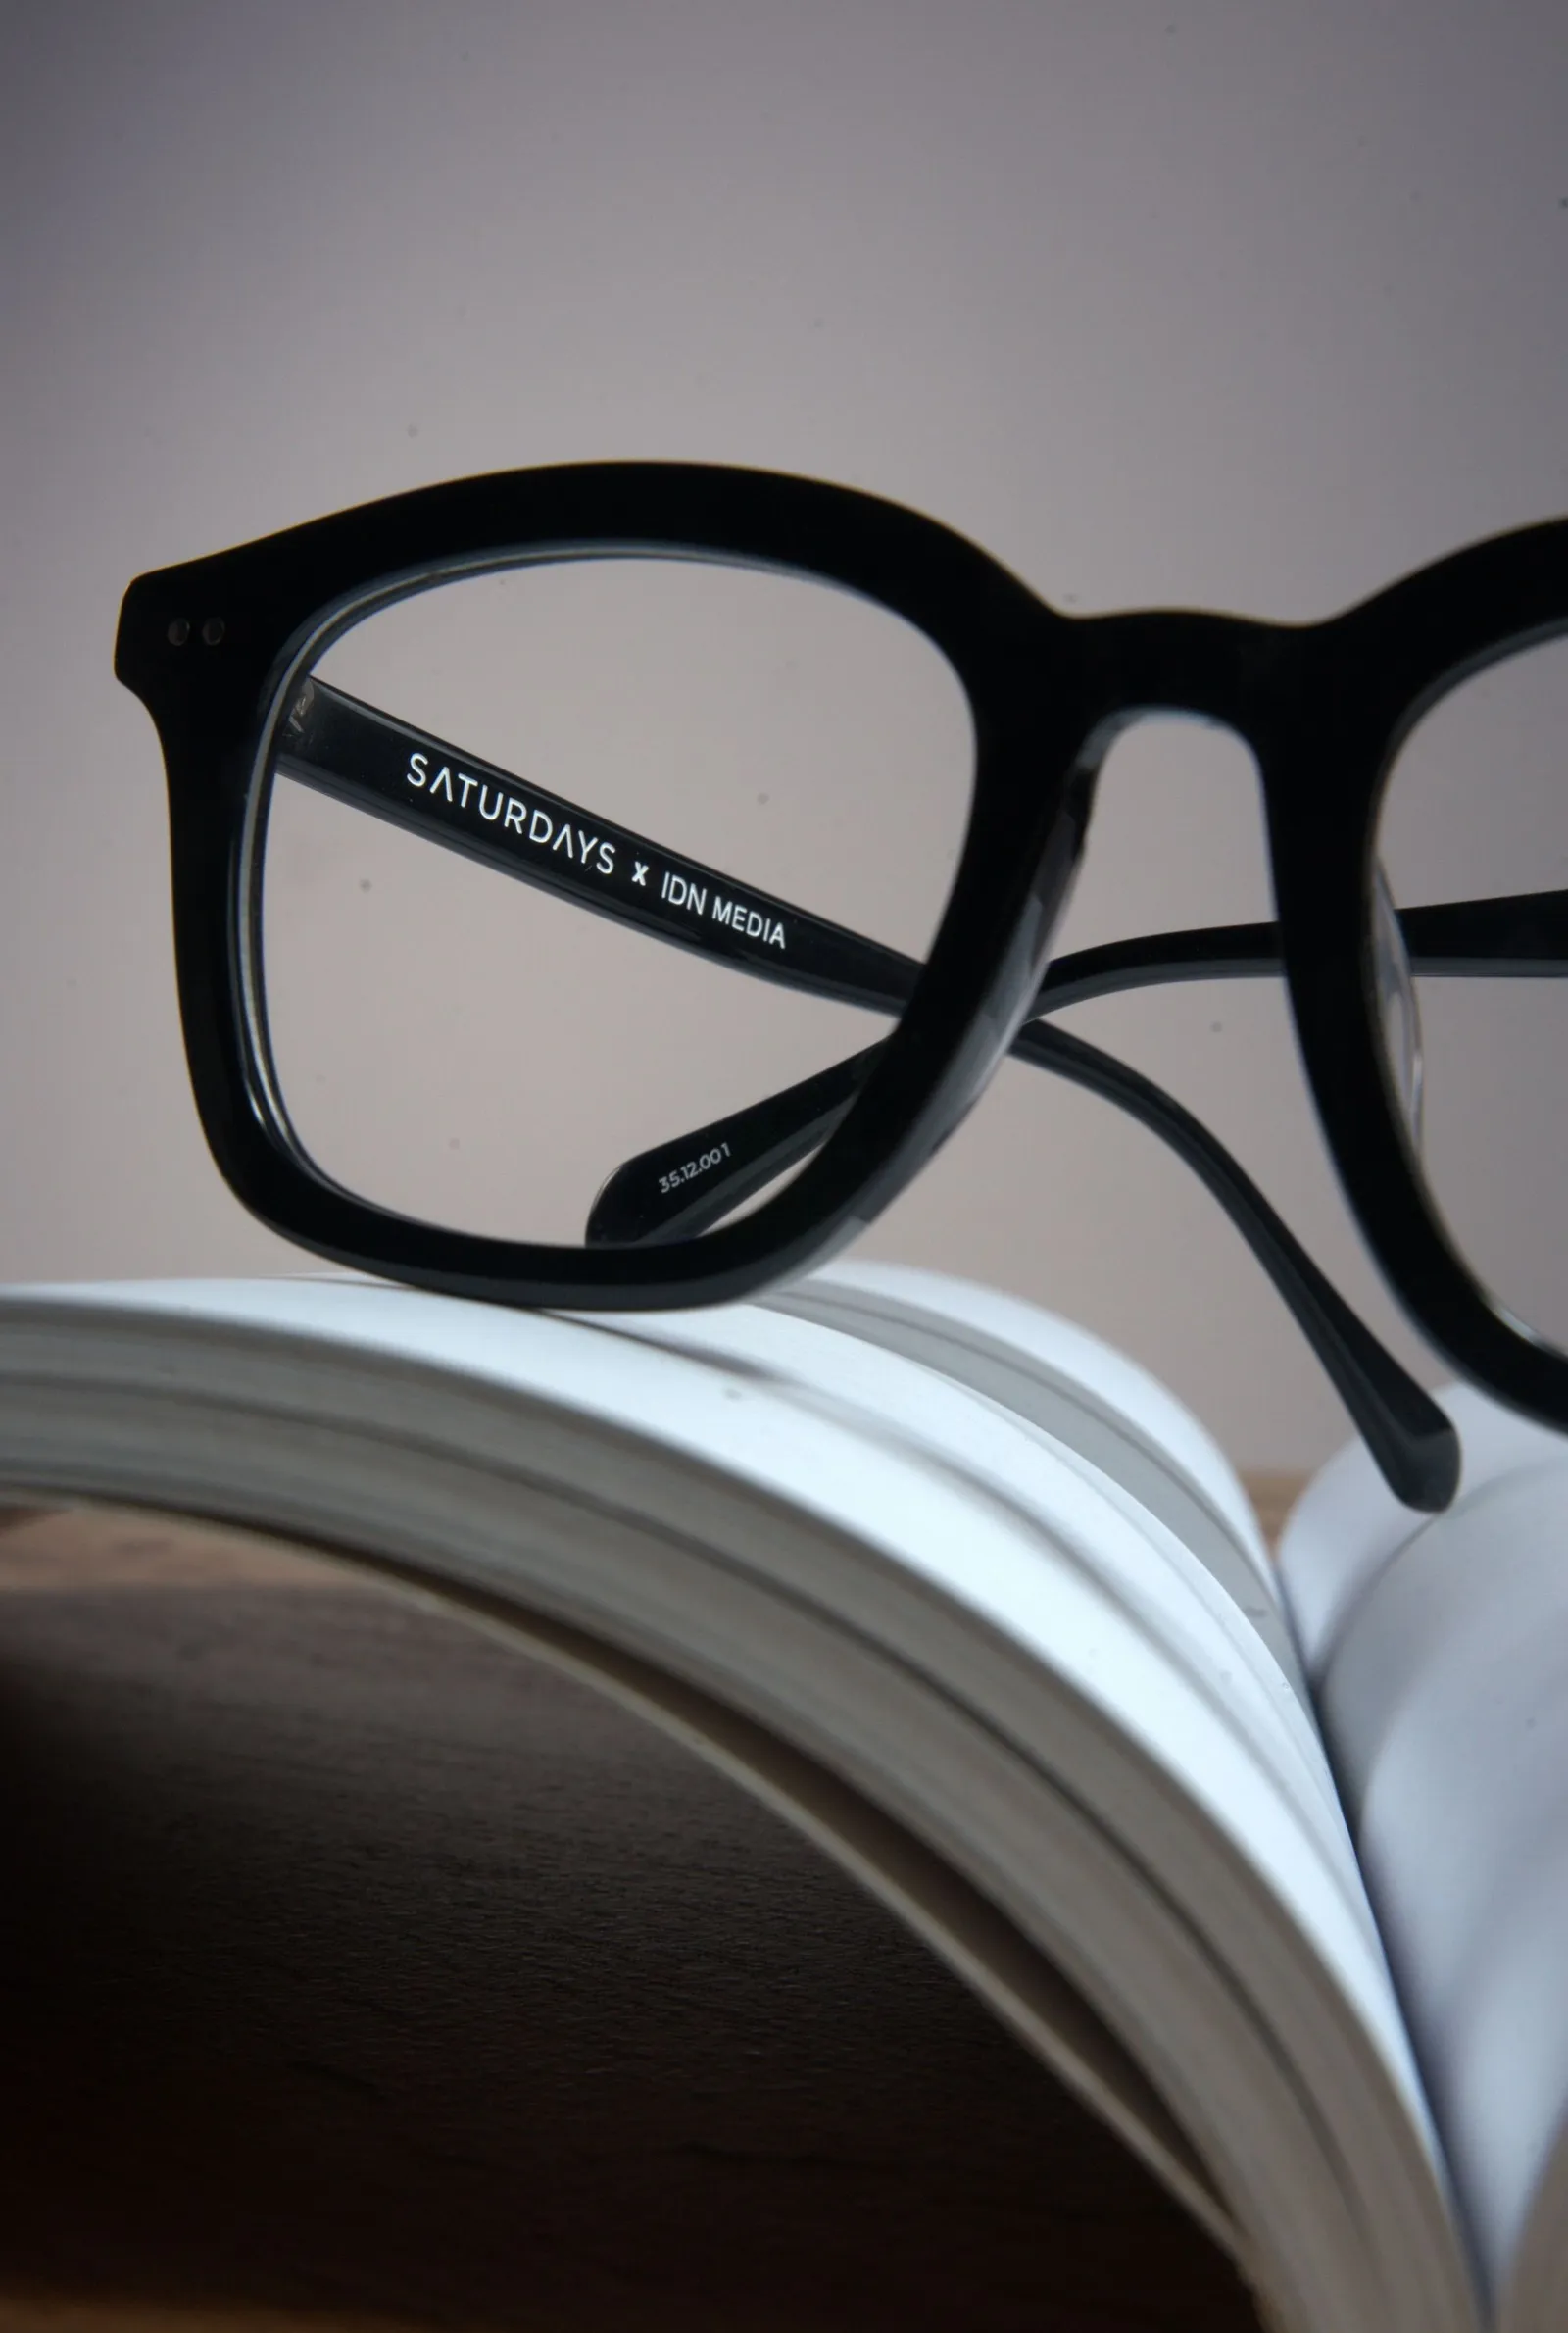 IDN Media Luncurkan Koleksi Kacamata Kolaborasi dengan SATURDAYS